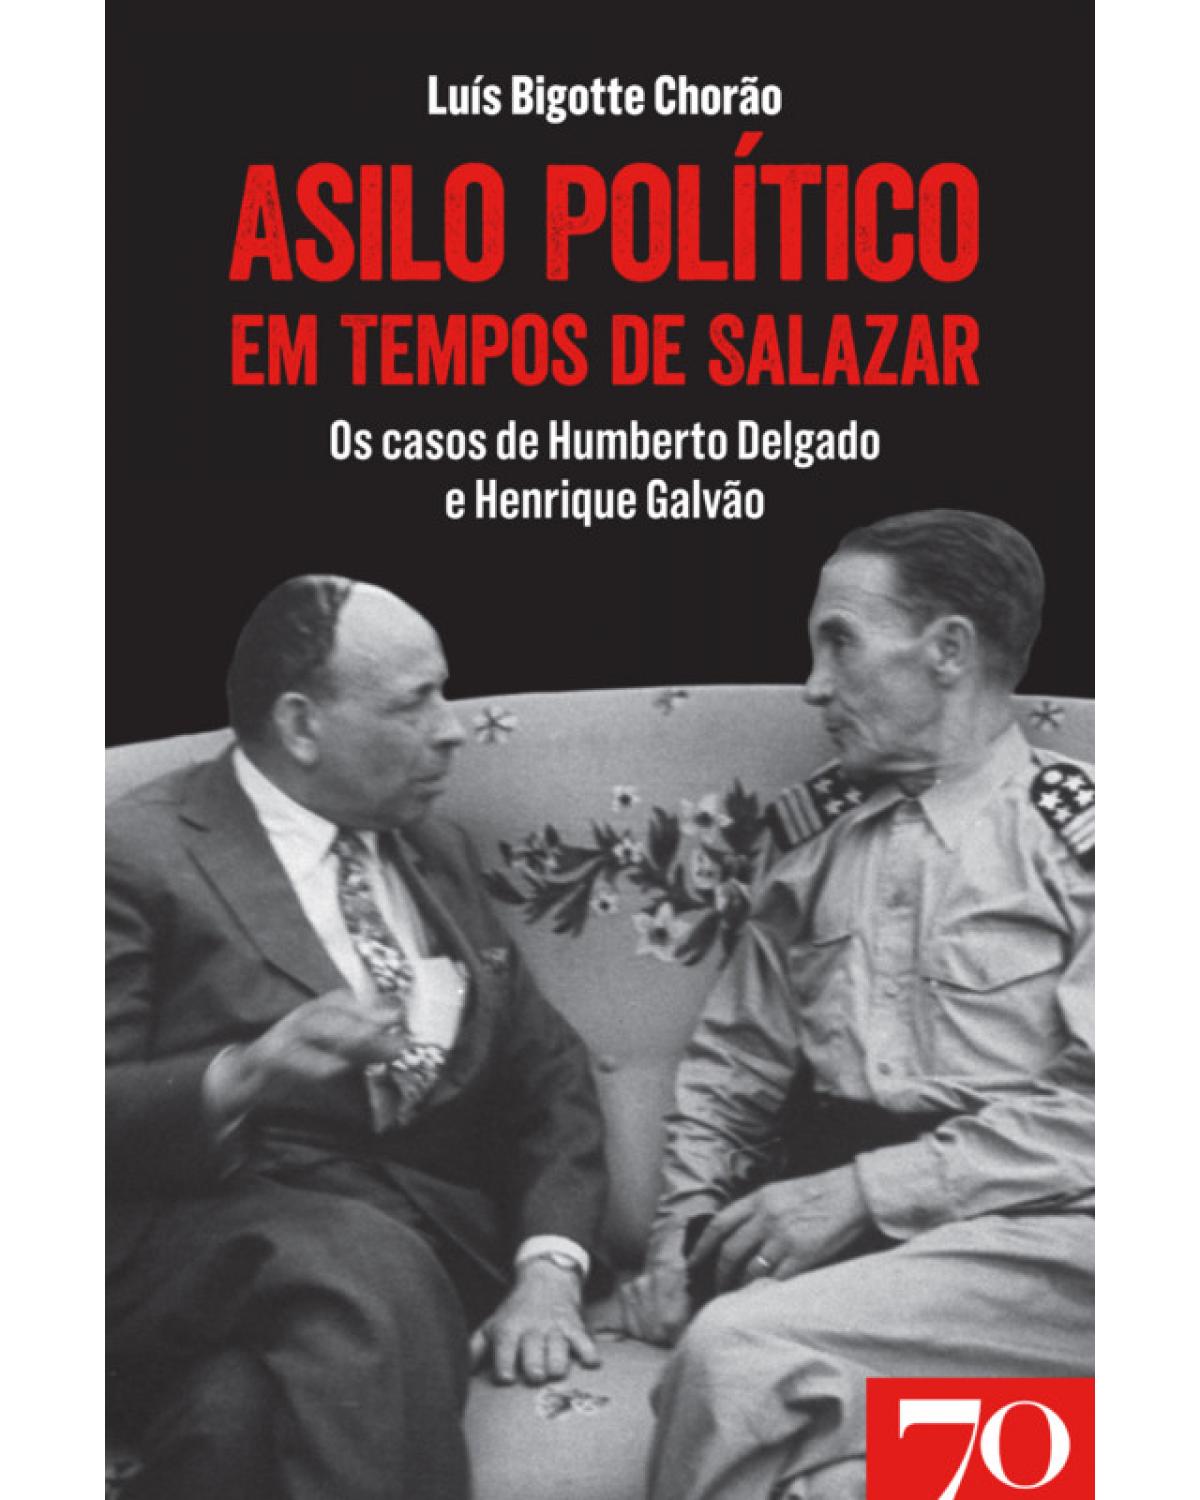 Asilo político em tempos de Salazar - os casos de Humberto Delgado e Henrique Galvão - 1ª Edição | 2019